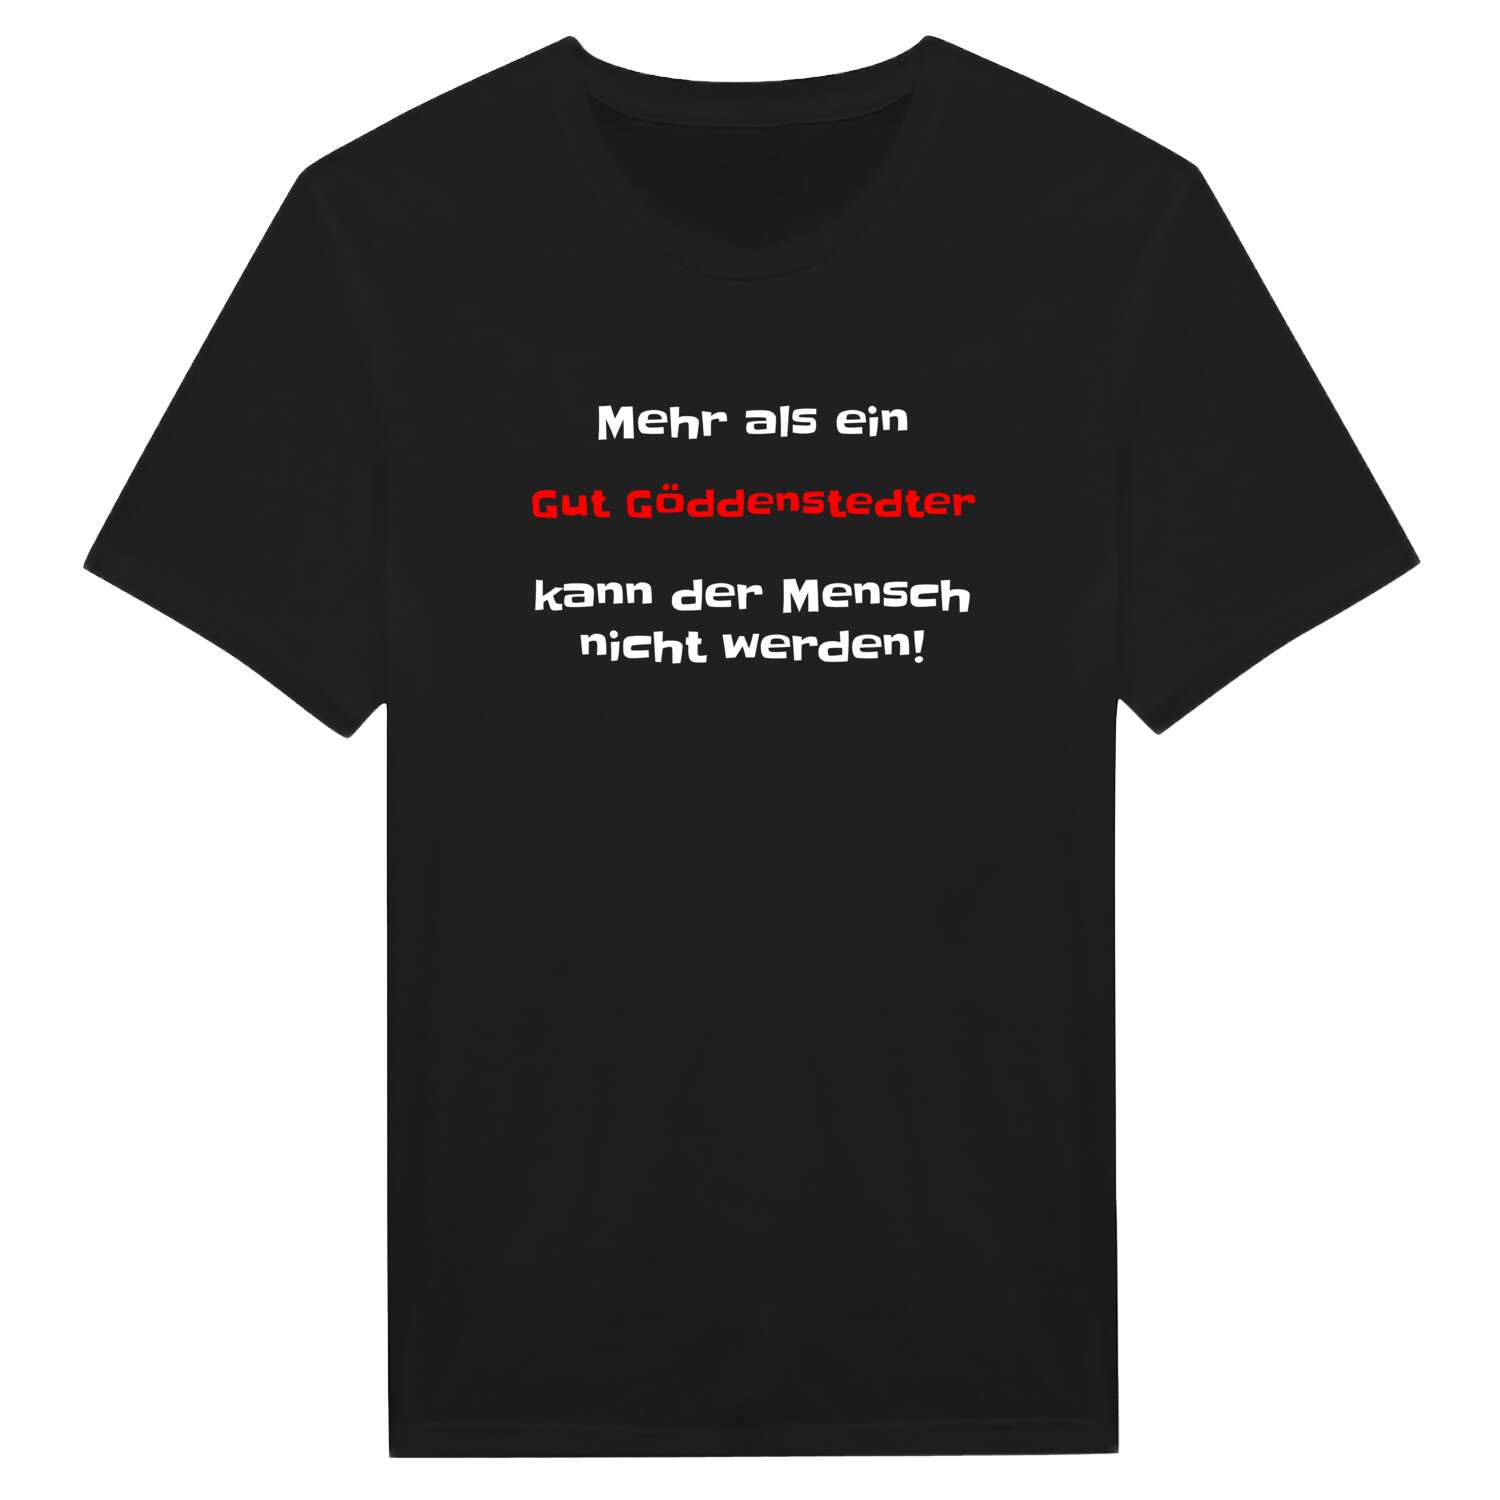 Gut Göddenstedt T-Shirt »Mehr als ein«